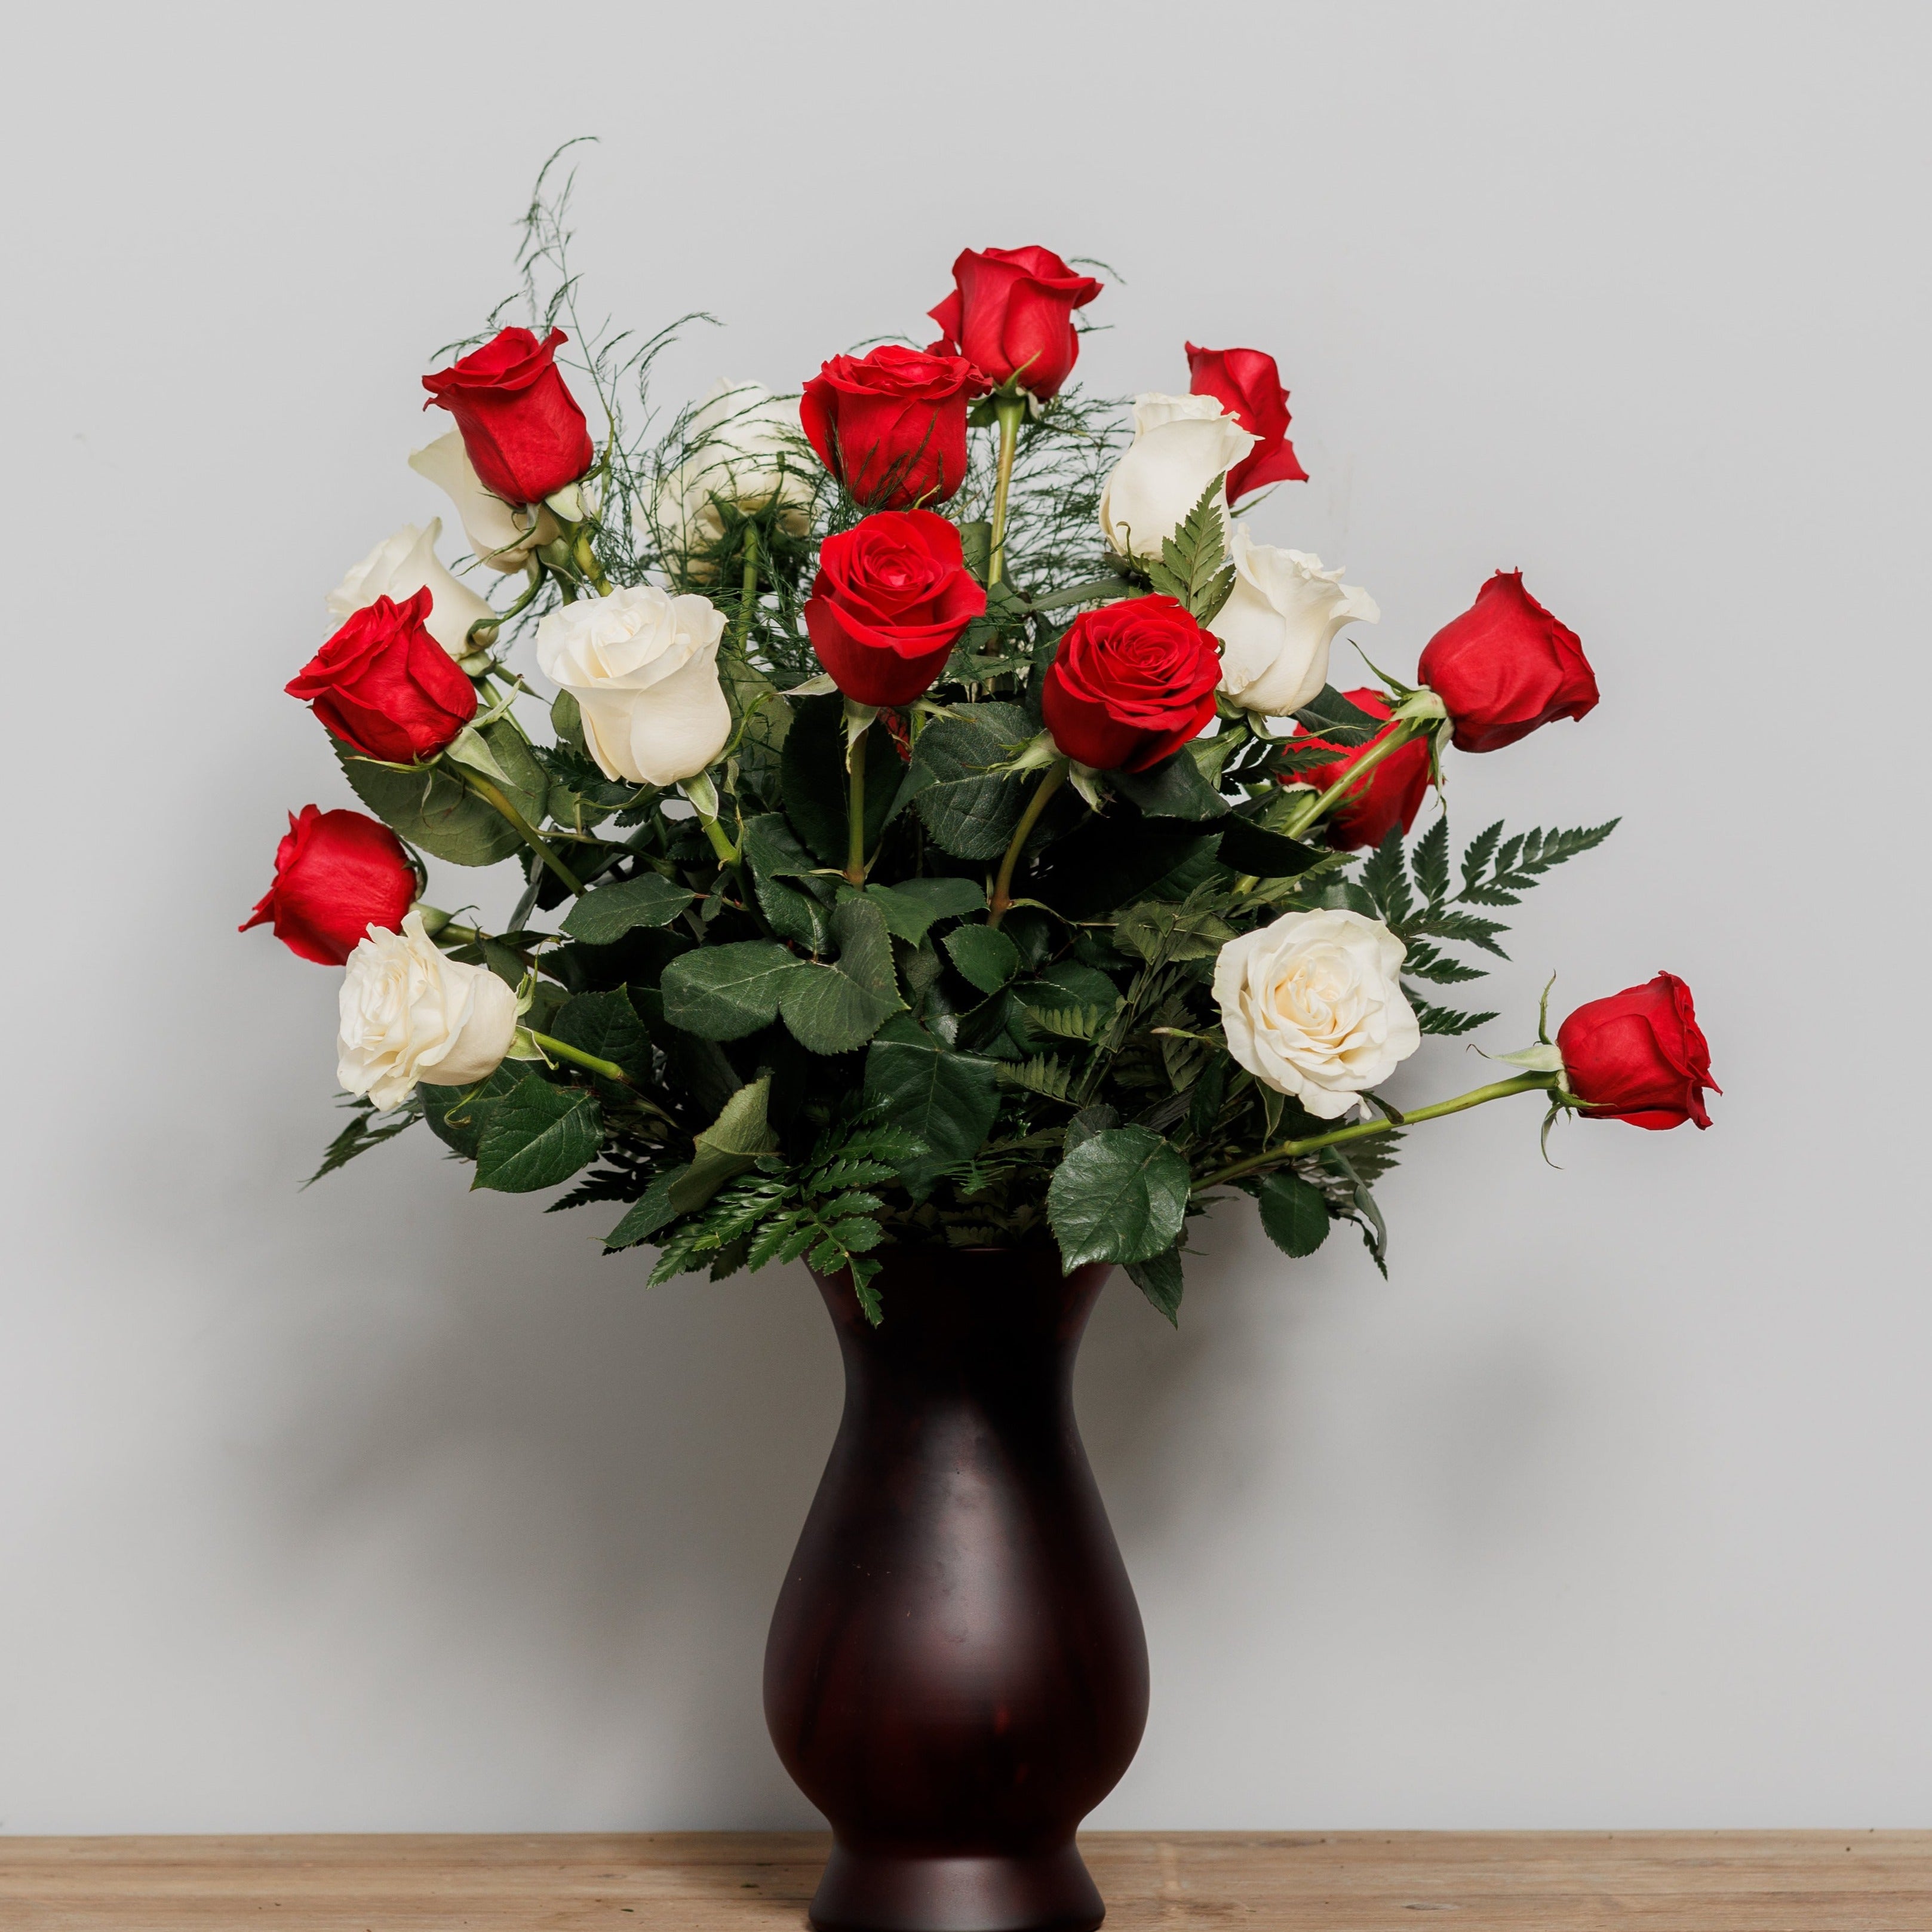 Two dozen roses in a premium vase.